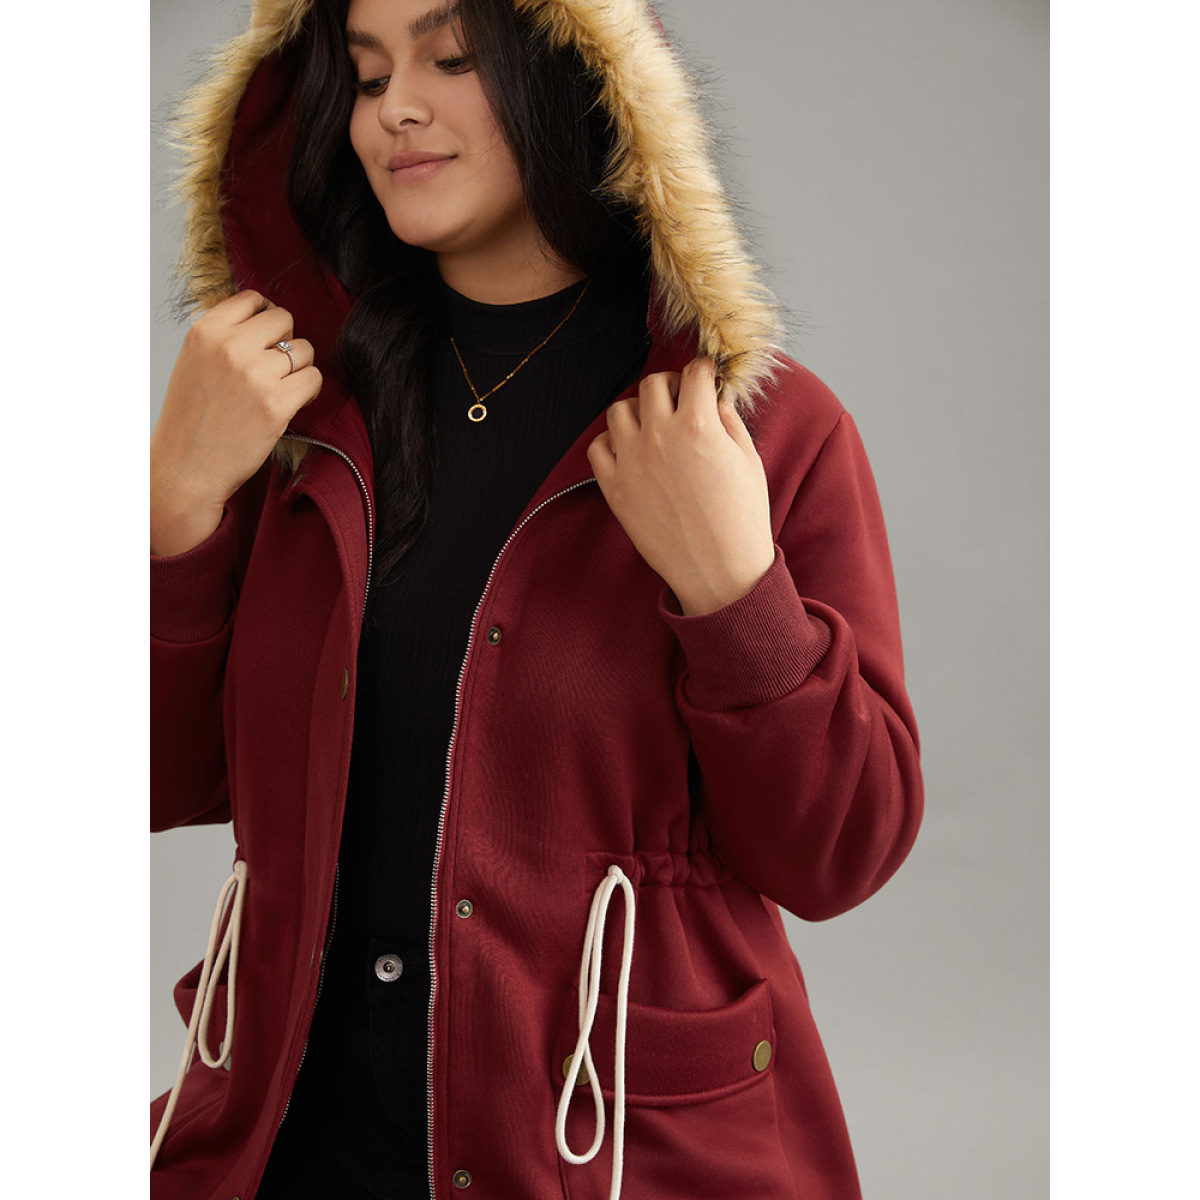 

Plus Size Plian Drawstring Zipper Fuzzy Trim Hooded Coat Women Scarlet Casual Contrast Ladies Dailywear Winter Coats BloomChic